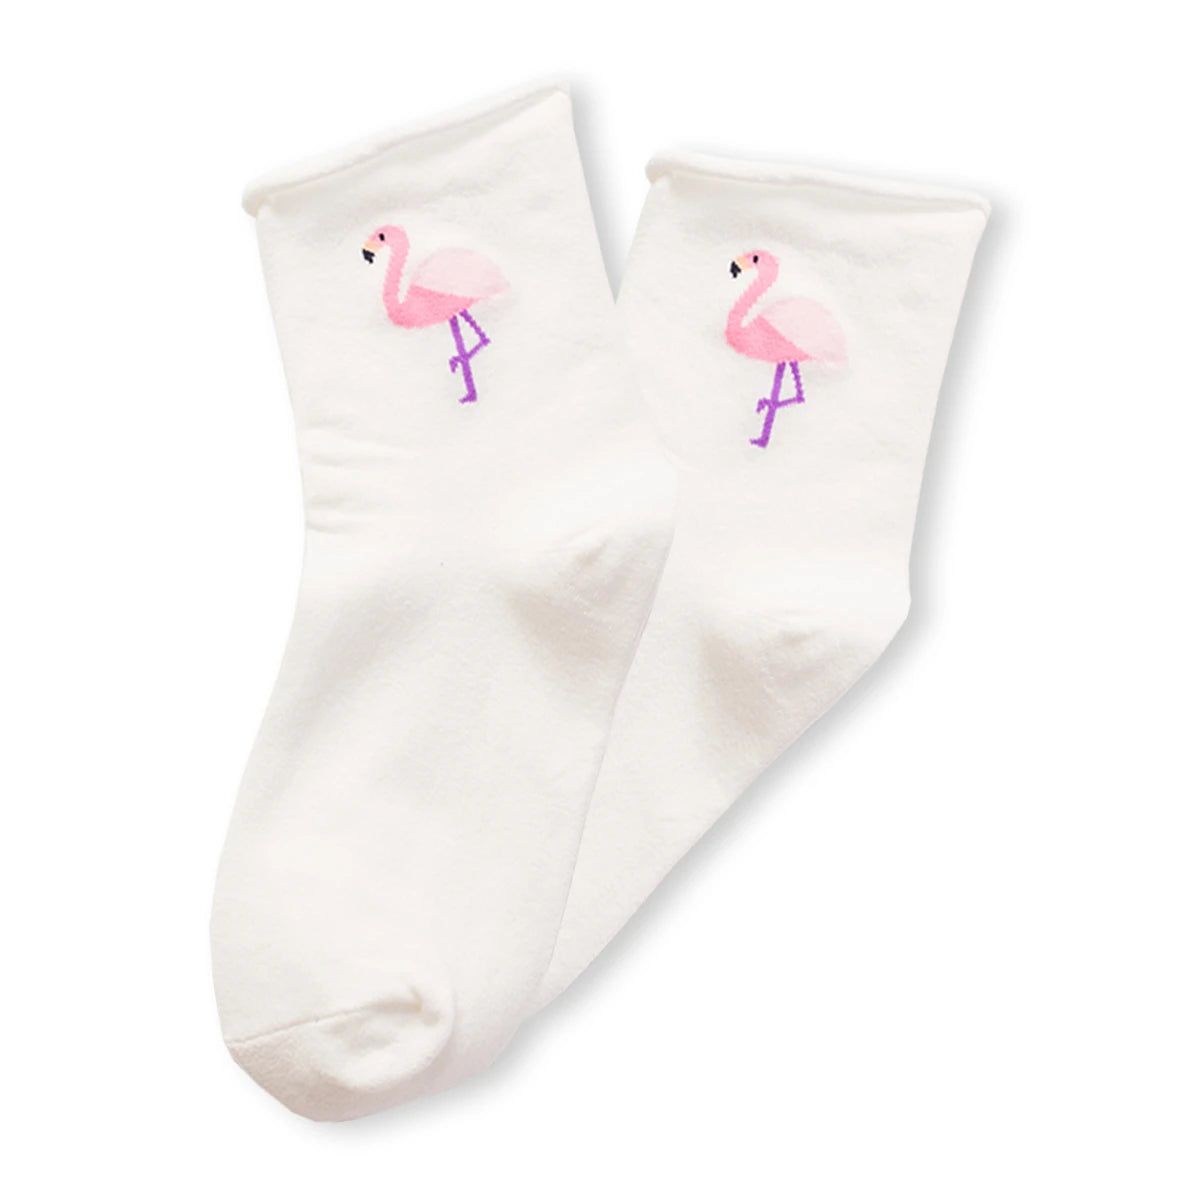 Chaussettes blanc en coton avec un flamant rose brodée dessus | Chaussettes abordables et durables | Une excellente option pour les familles